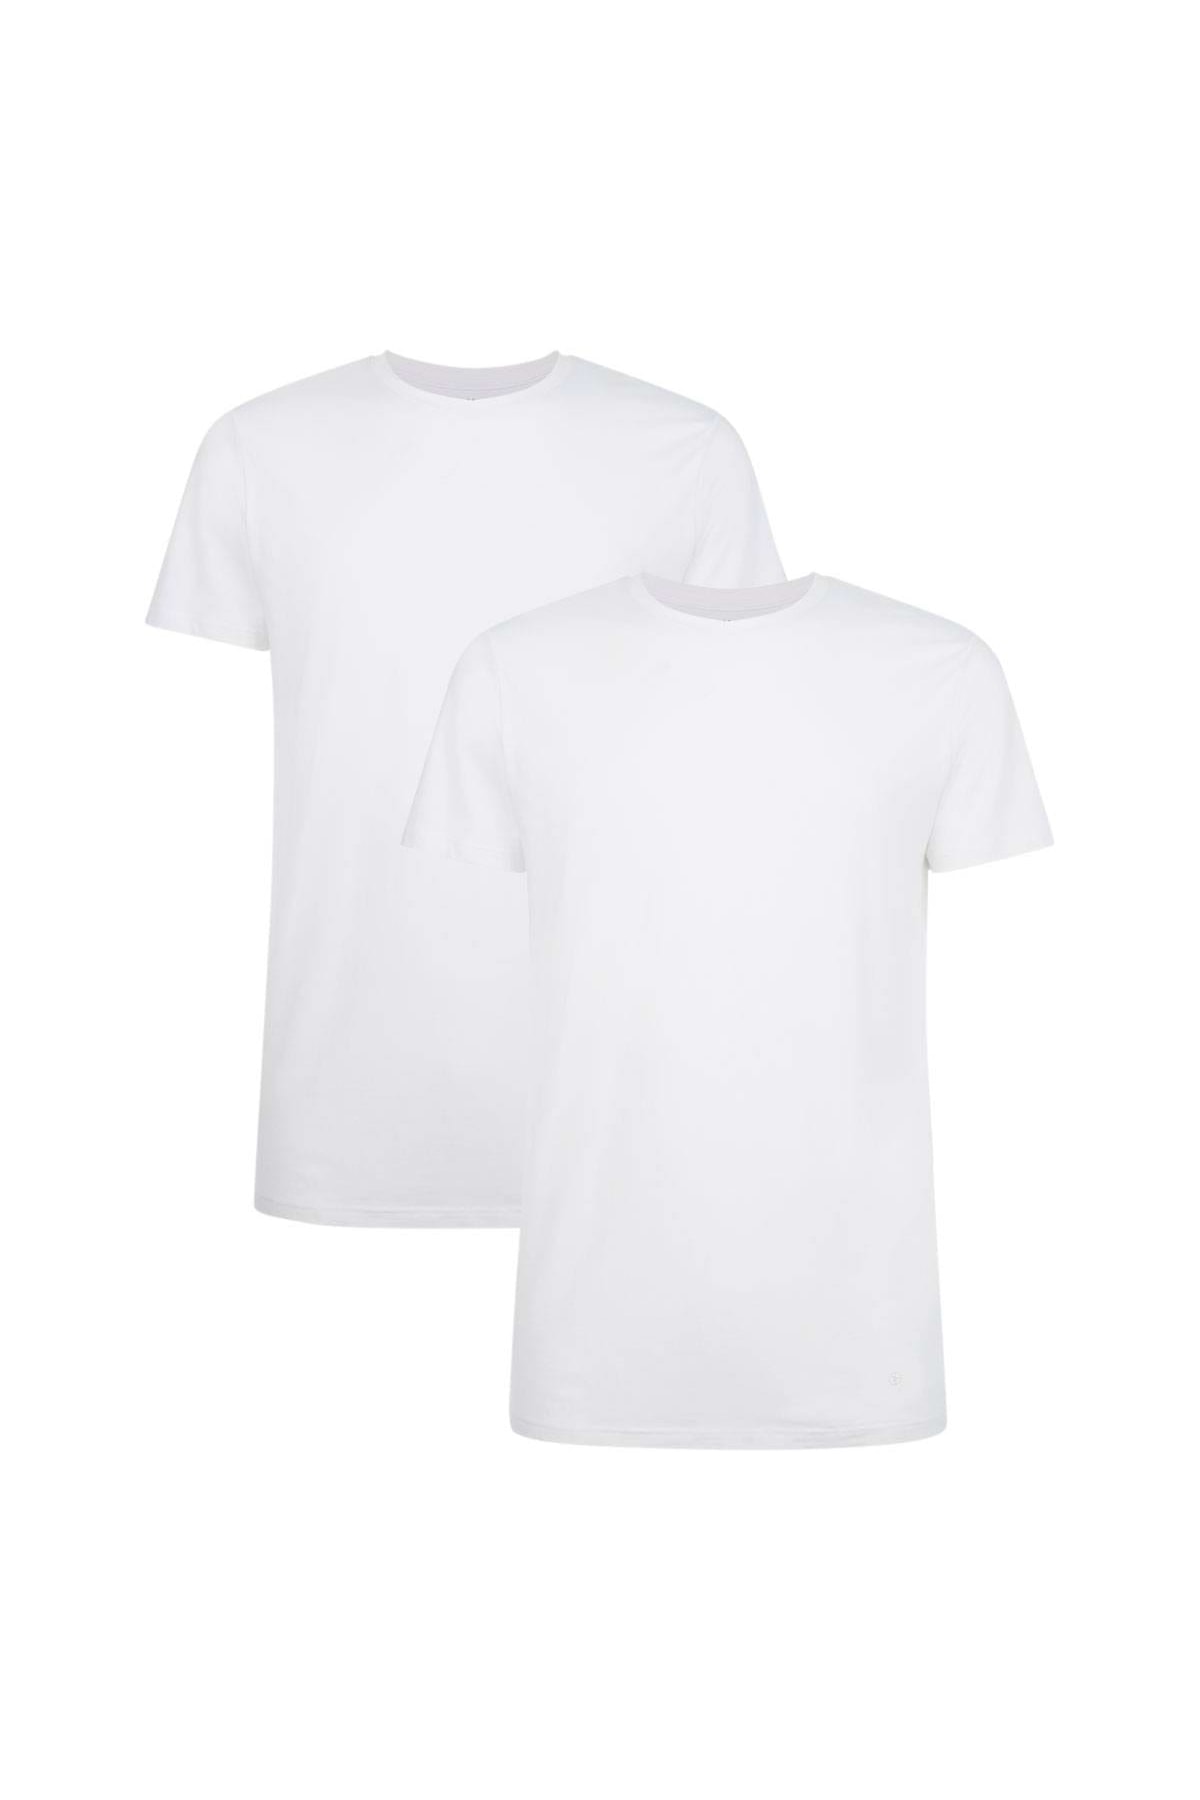 Bamboo Basics T-Shirt Weiß Regular Fit Fast ausverkauft